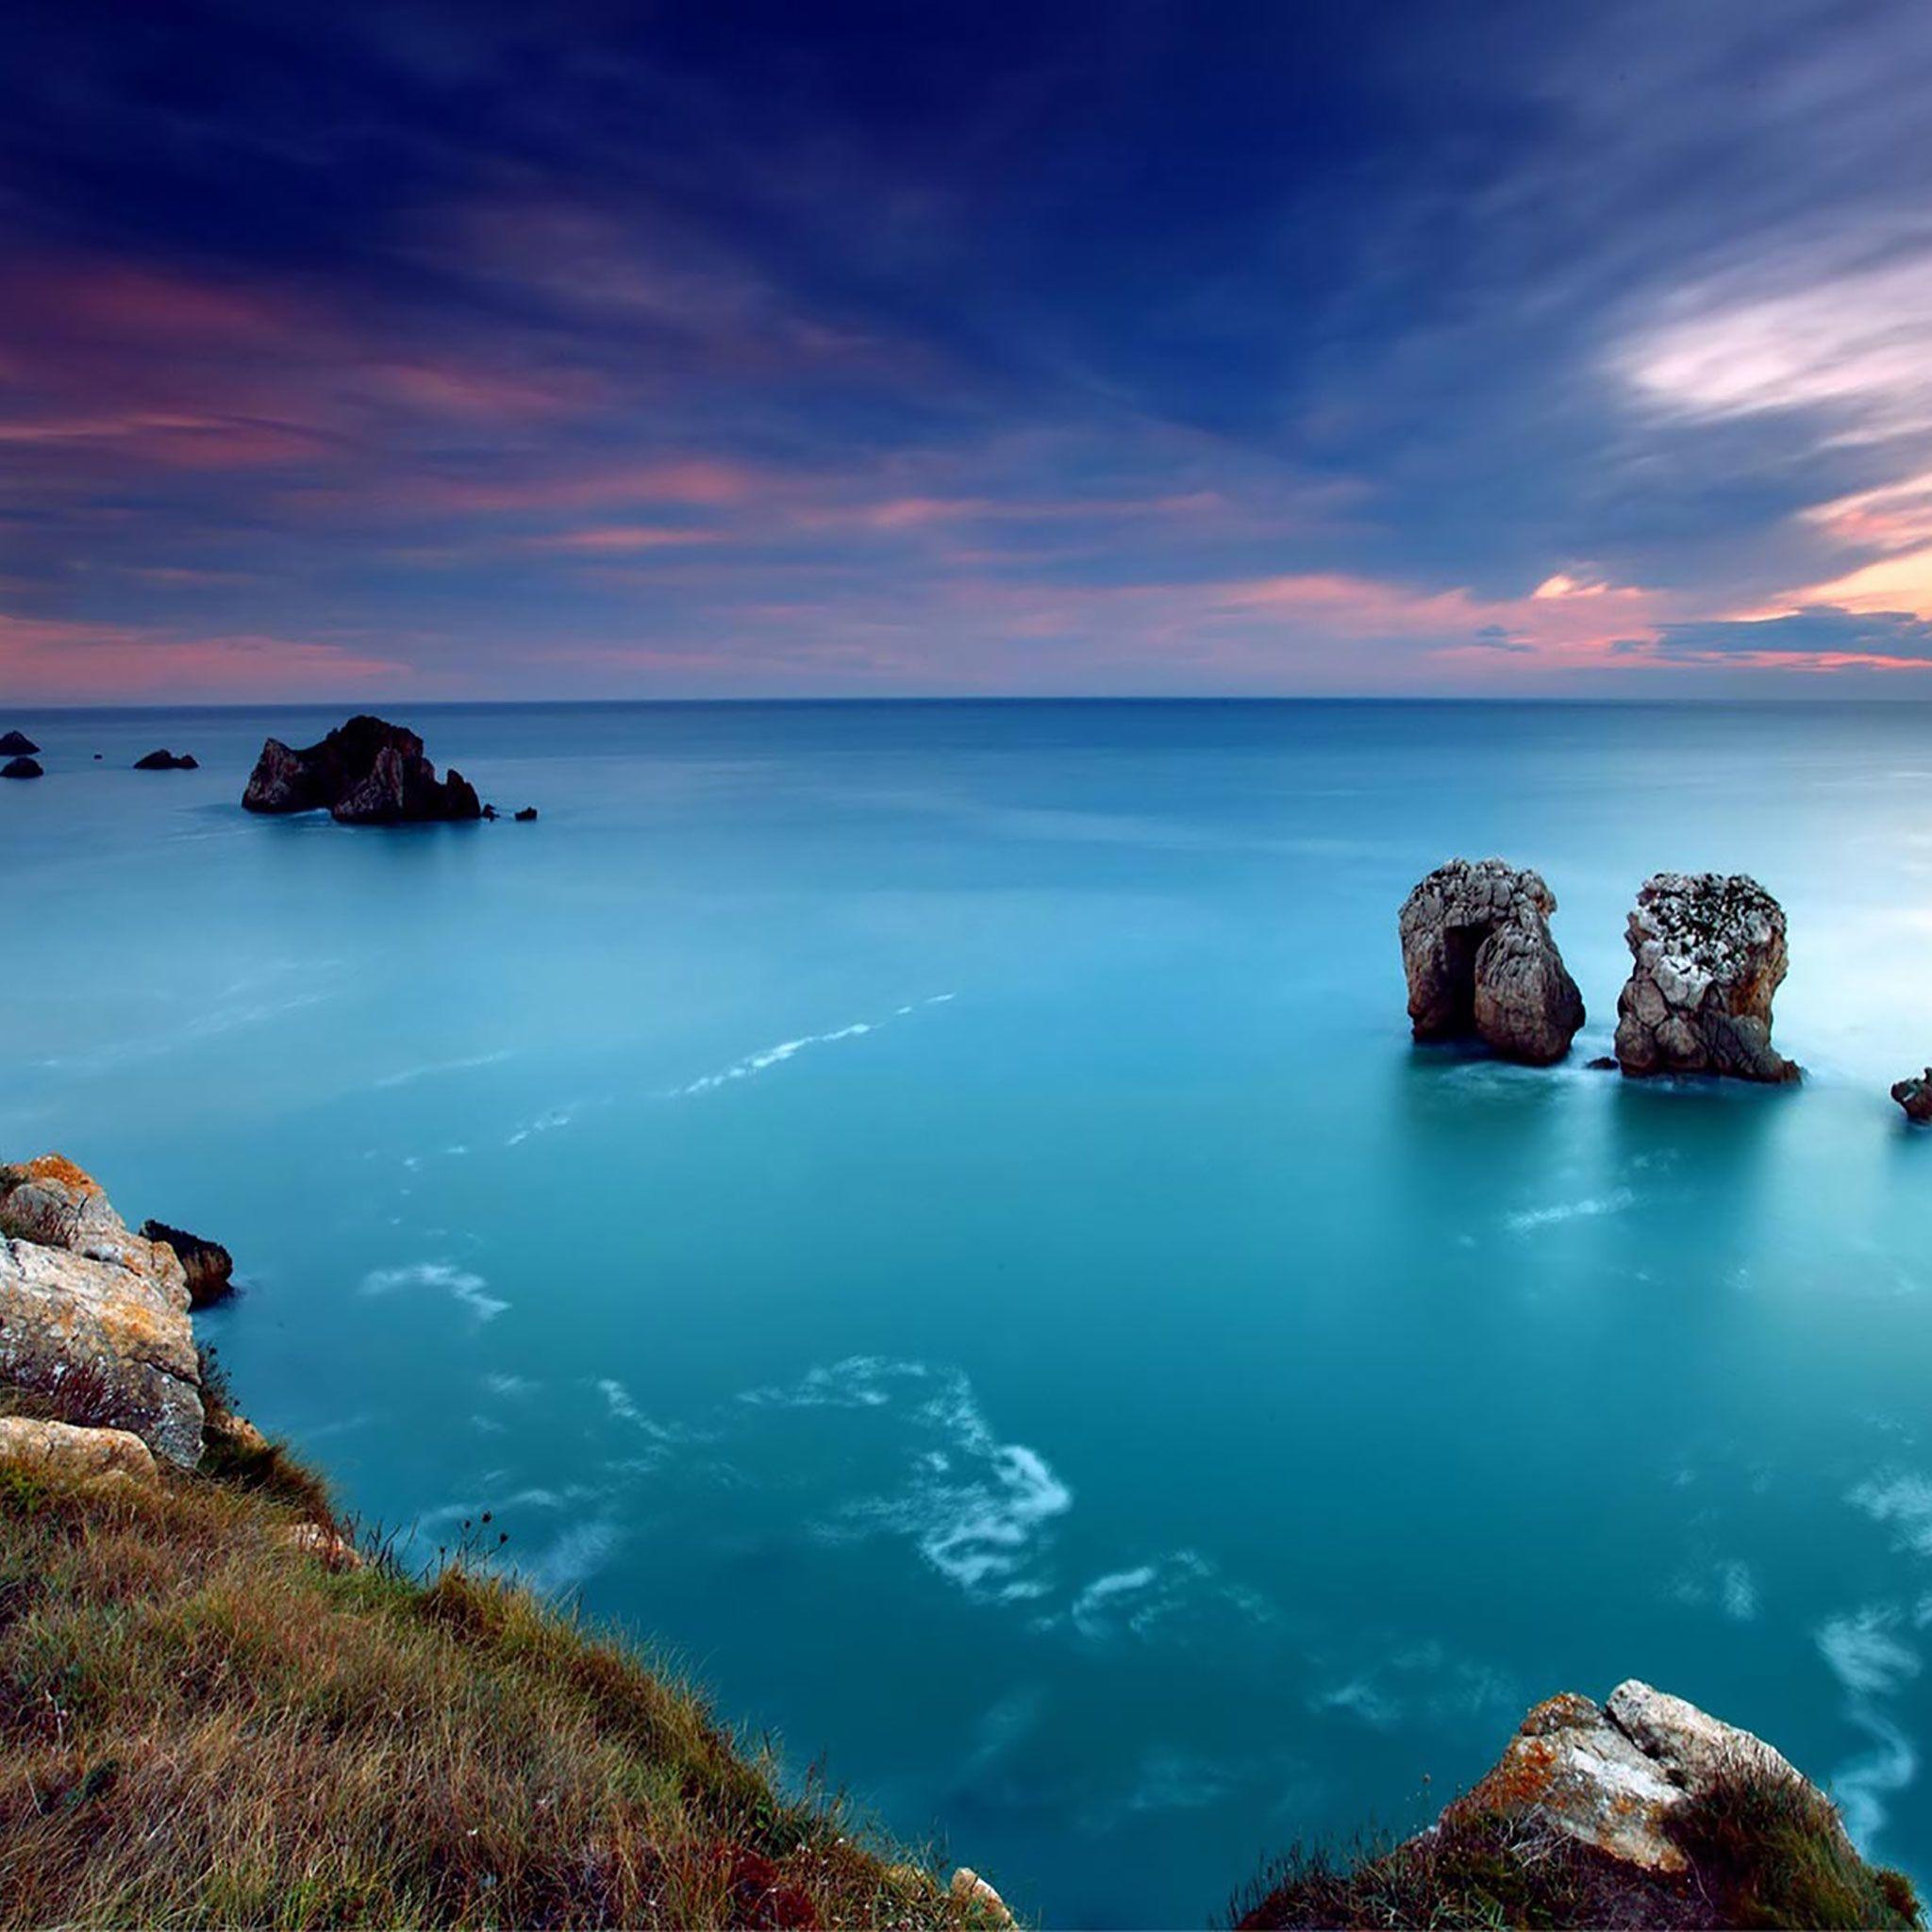 Blue #Oceans #Sunset #iPad Air #wallpaper #iPadAir #iPadAir2